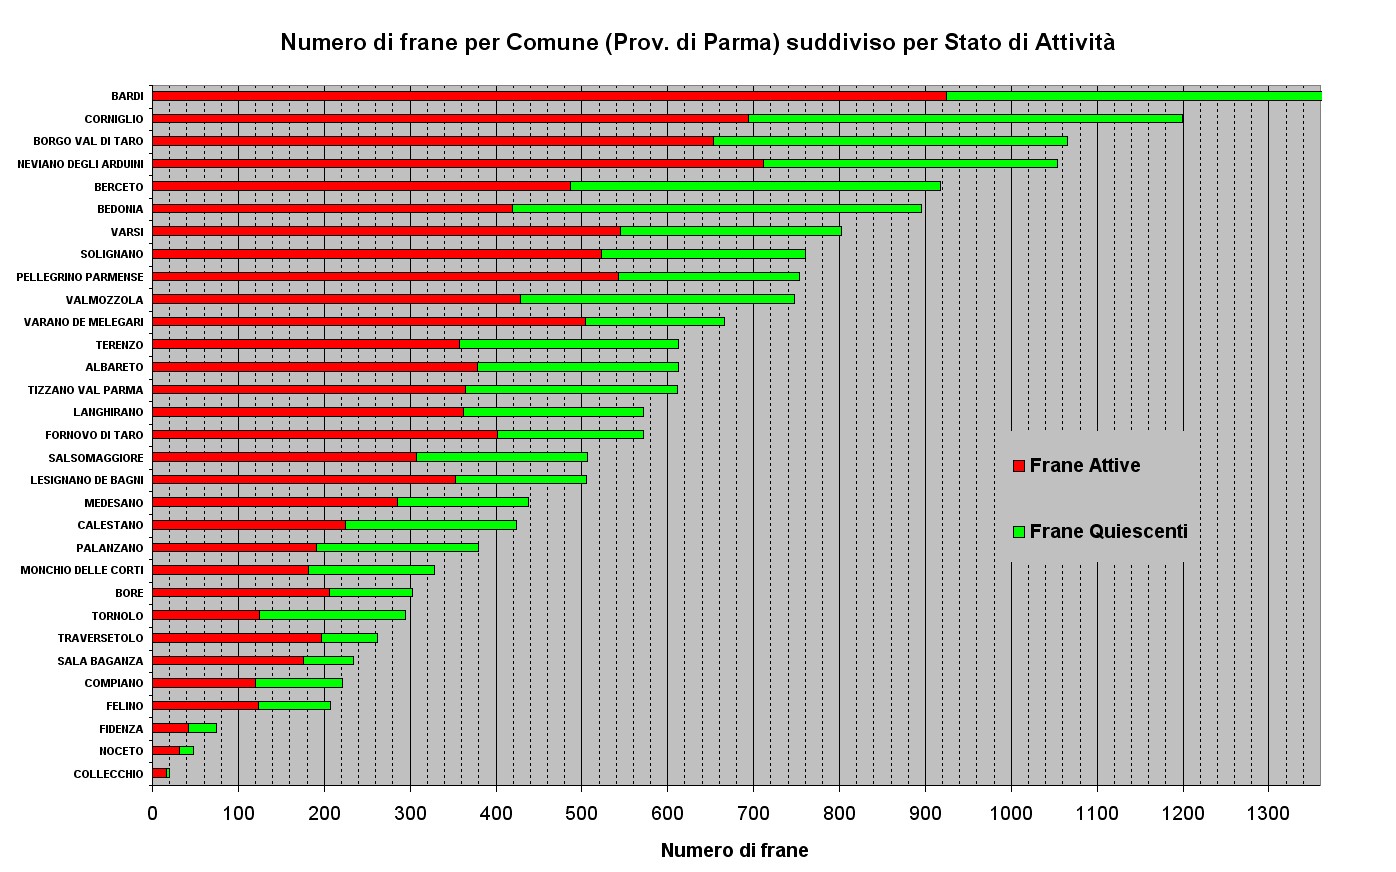 Numero di Frane relative ai Comuni della Provincia di Parma ordinato per abbondanza e suddiviso per stato di attività; Il Comune di Bardi ha un numero complessivo di 1656 frane (fuori scala)